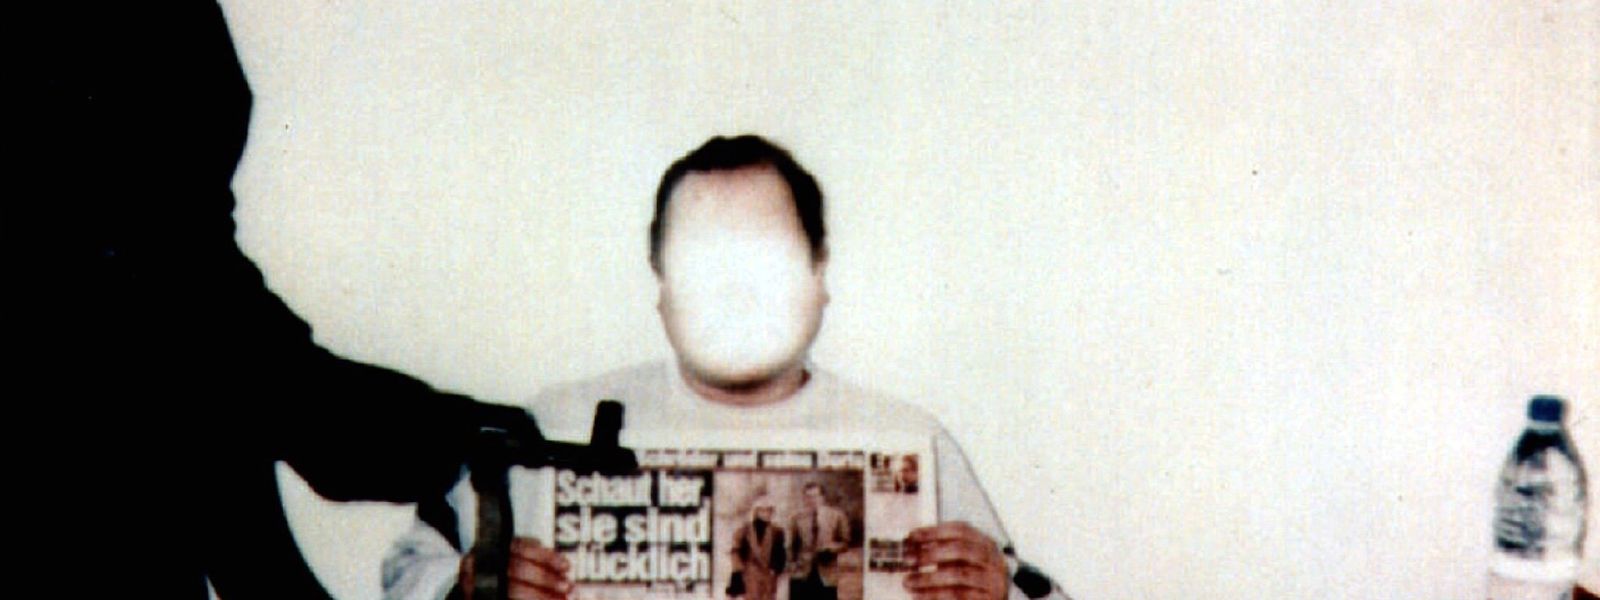 Am Anfang seiner Gefangenschaft senden die Entführer dieses Foto als Lebenszeichen an Jan Philipp Reemtsmas Familie. Die Polizei hat vor einer Veröffentlichung das Gesicht wegretuschiert, weil Verletzungen zu sehen waren. 